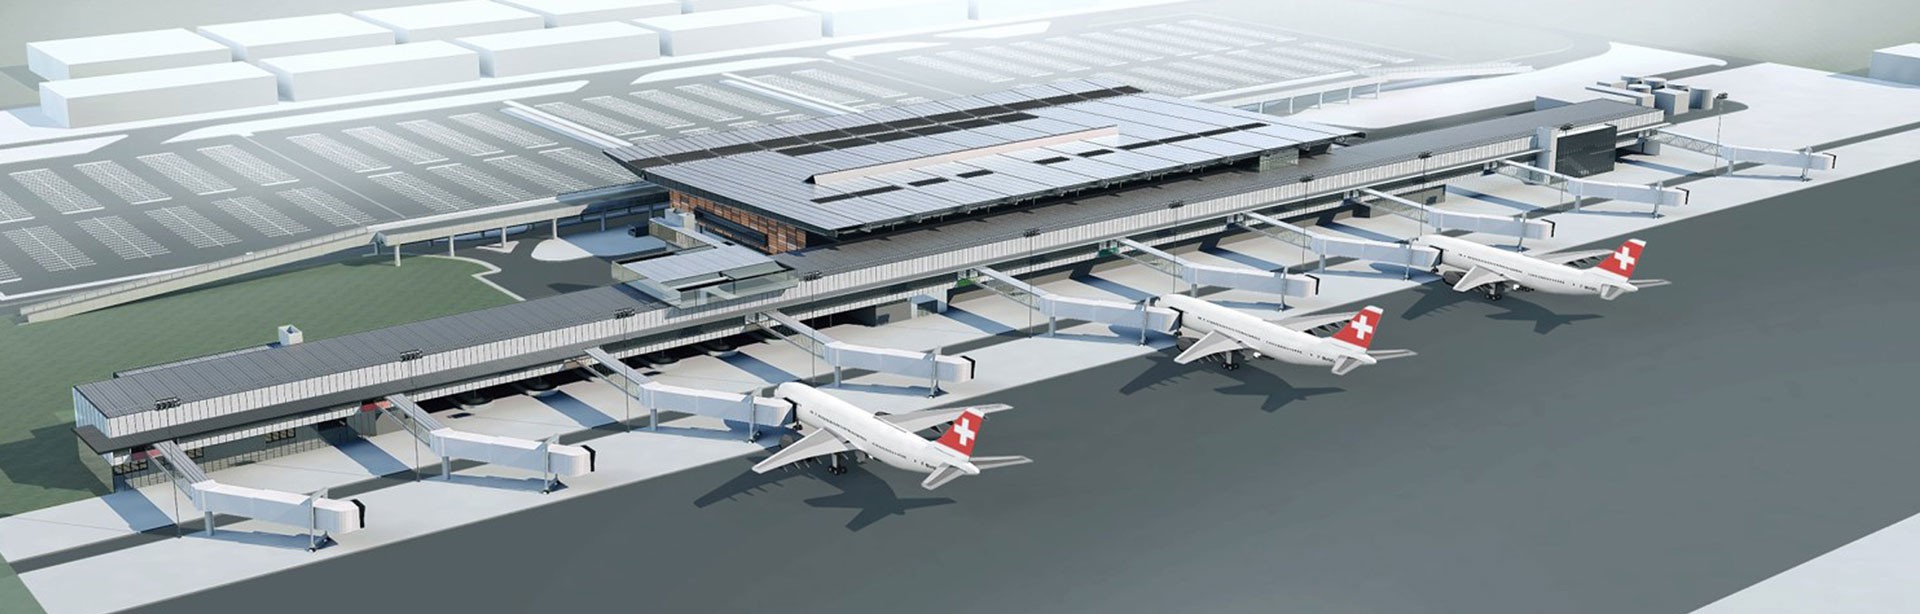 Un aéroport brésilien pourrait avoir un nouveau terminal mais pas d'accès